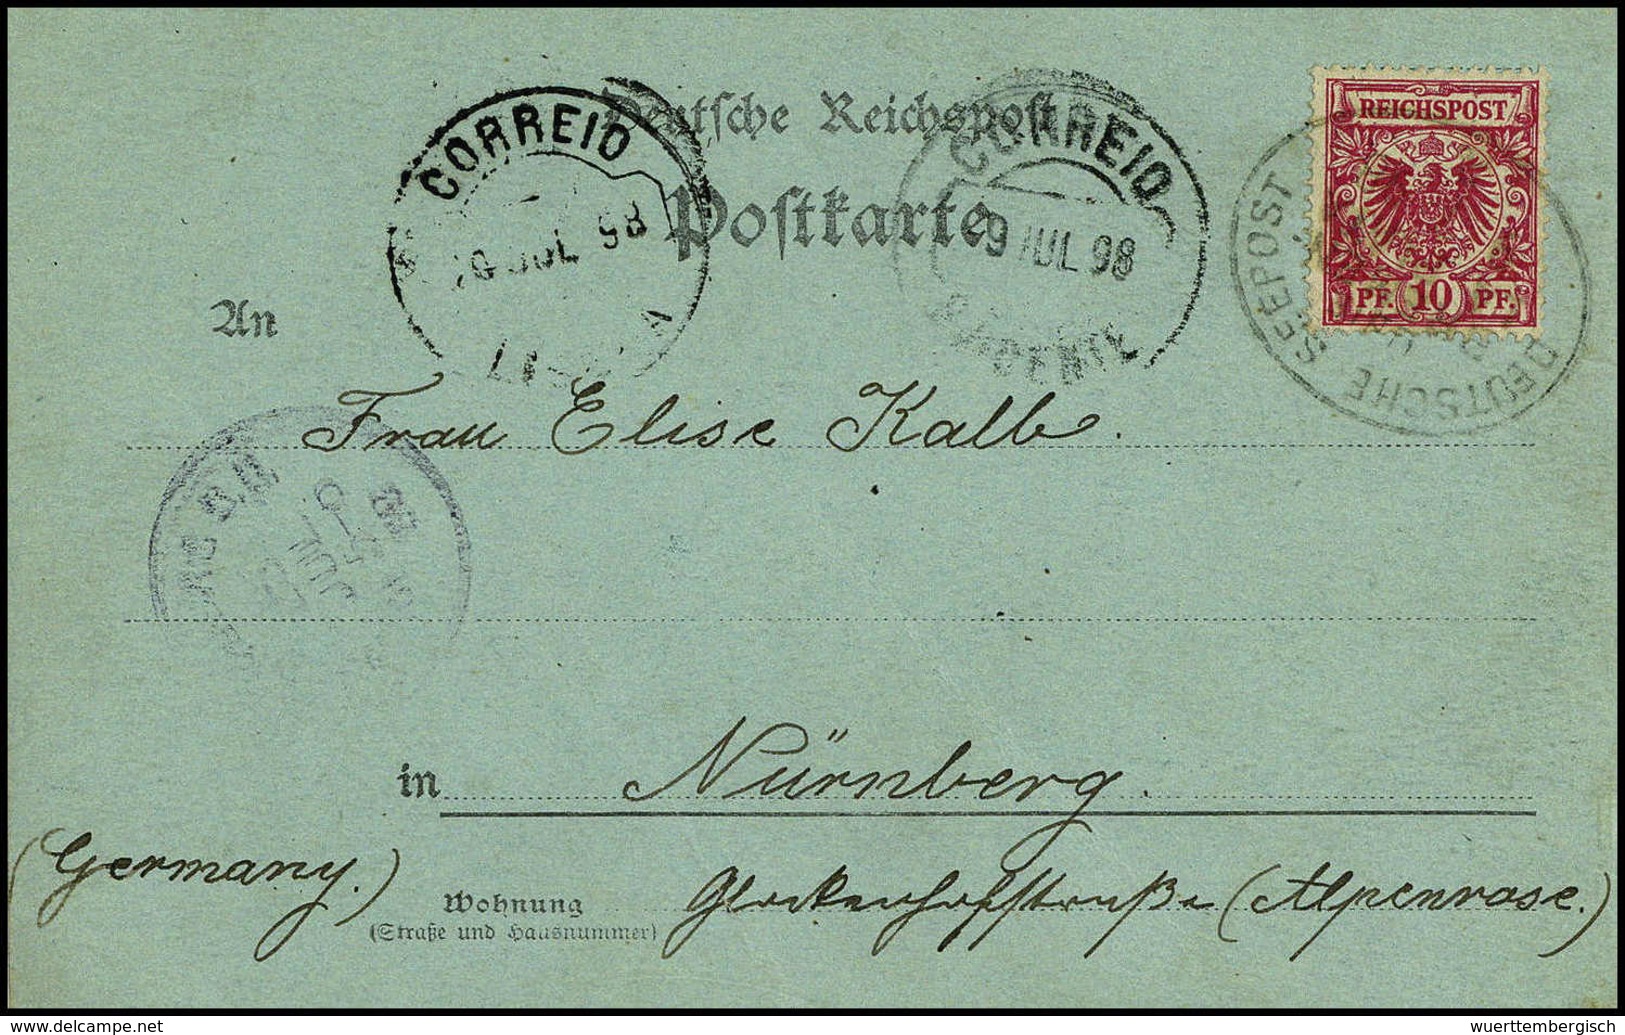 Beleg SCHIFFSPOST - kl. Partie von acht Belegen 1898/1910, dabei bessere Stücke.